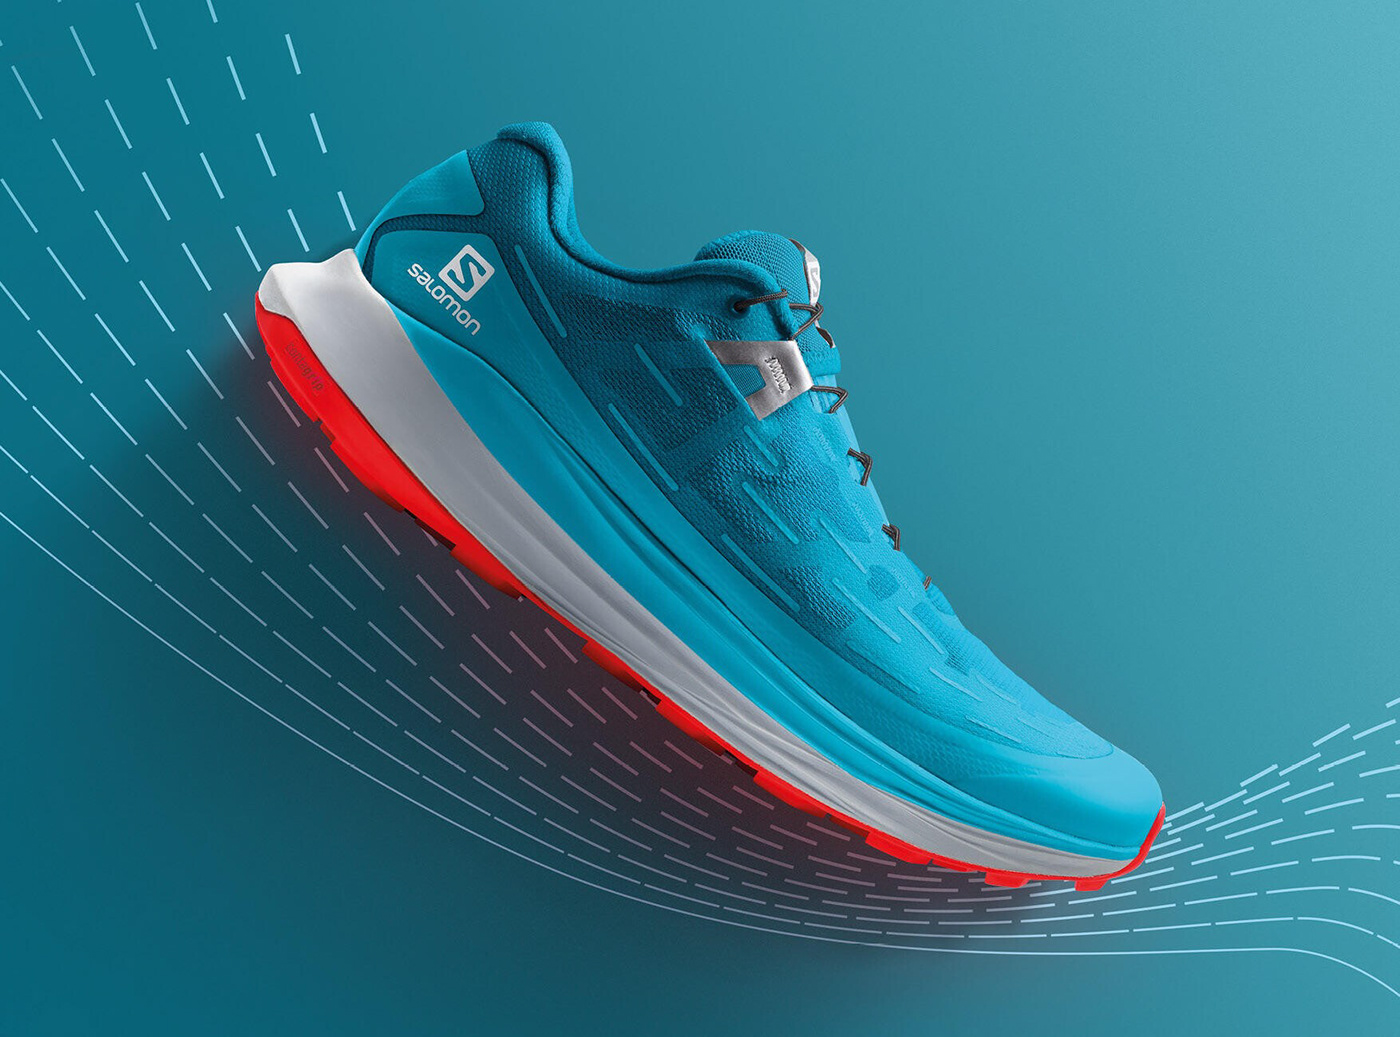 3d animation 3D Blender Maya 3d shoe design footwear marvelous designer Clo3d 3D Rendering 3D Fashion Design 3d shoe modeling